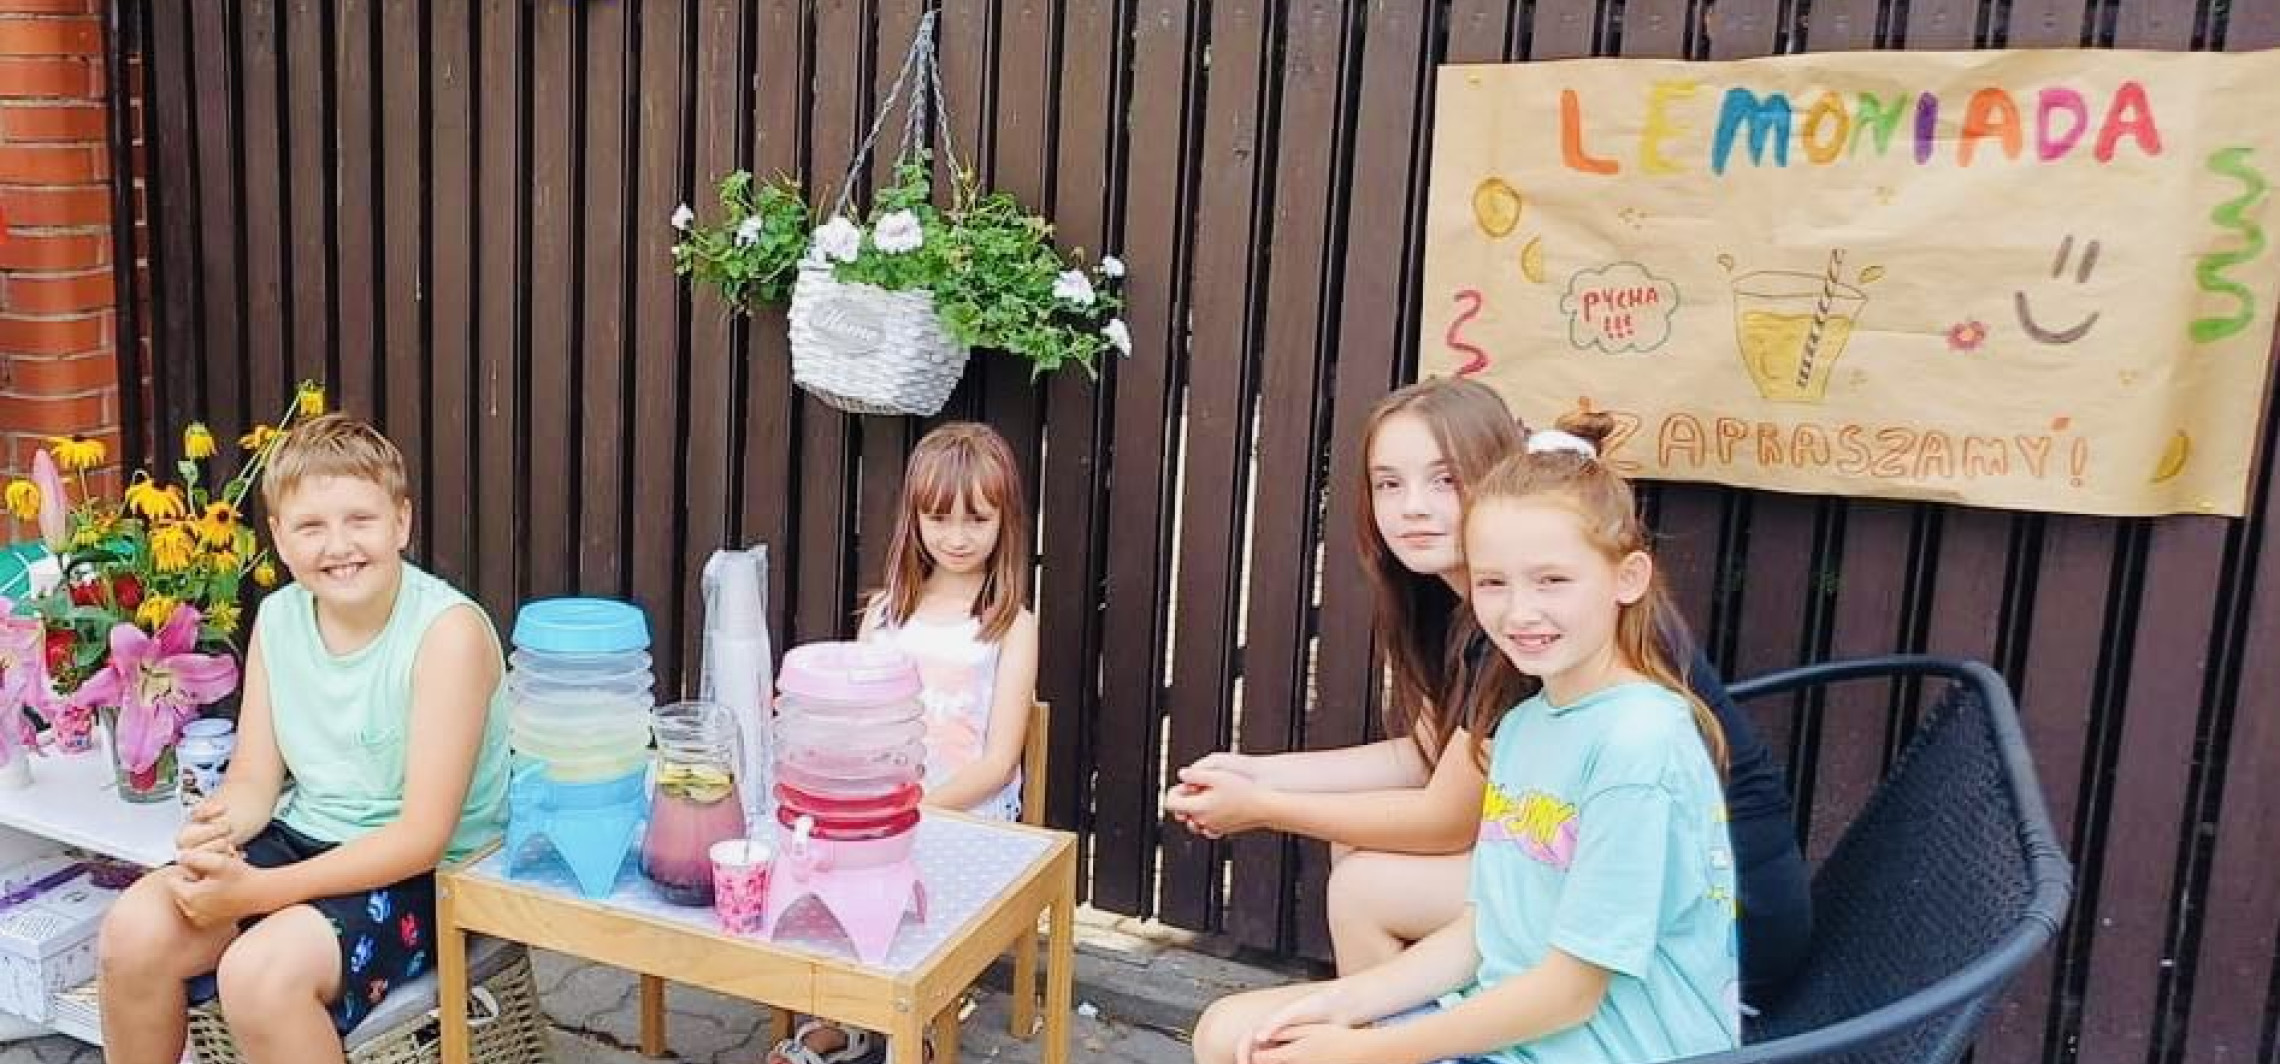 Inowrocław - Dzieci zapraszają na lemoniadę. Prosto z ulicy